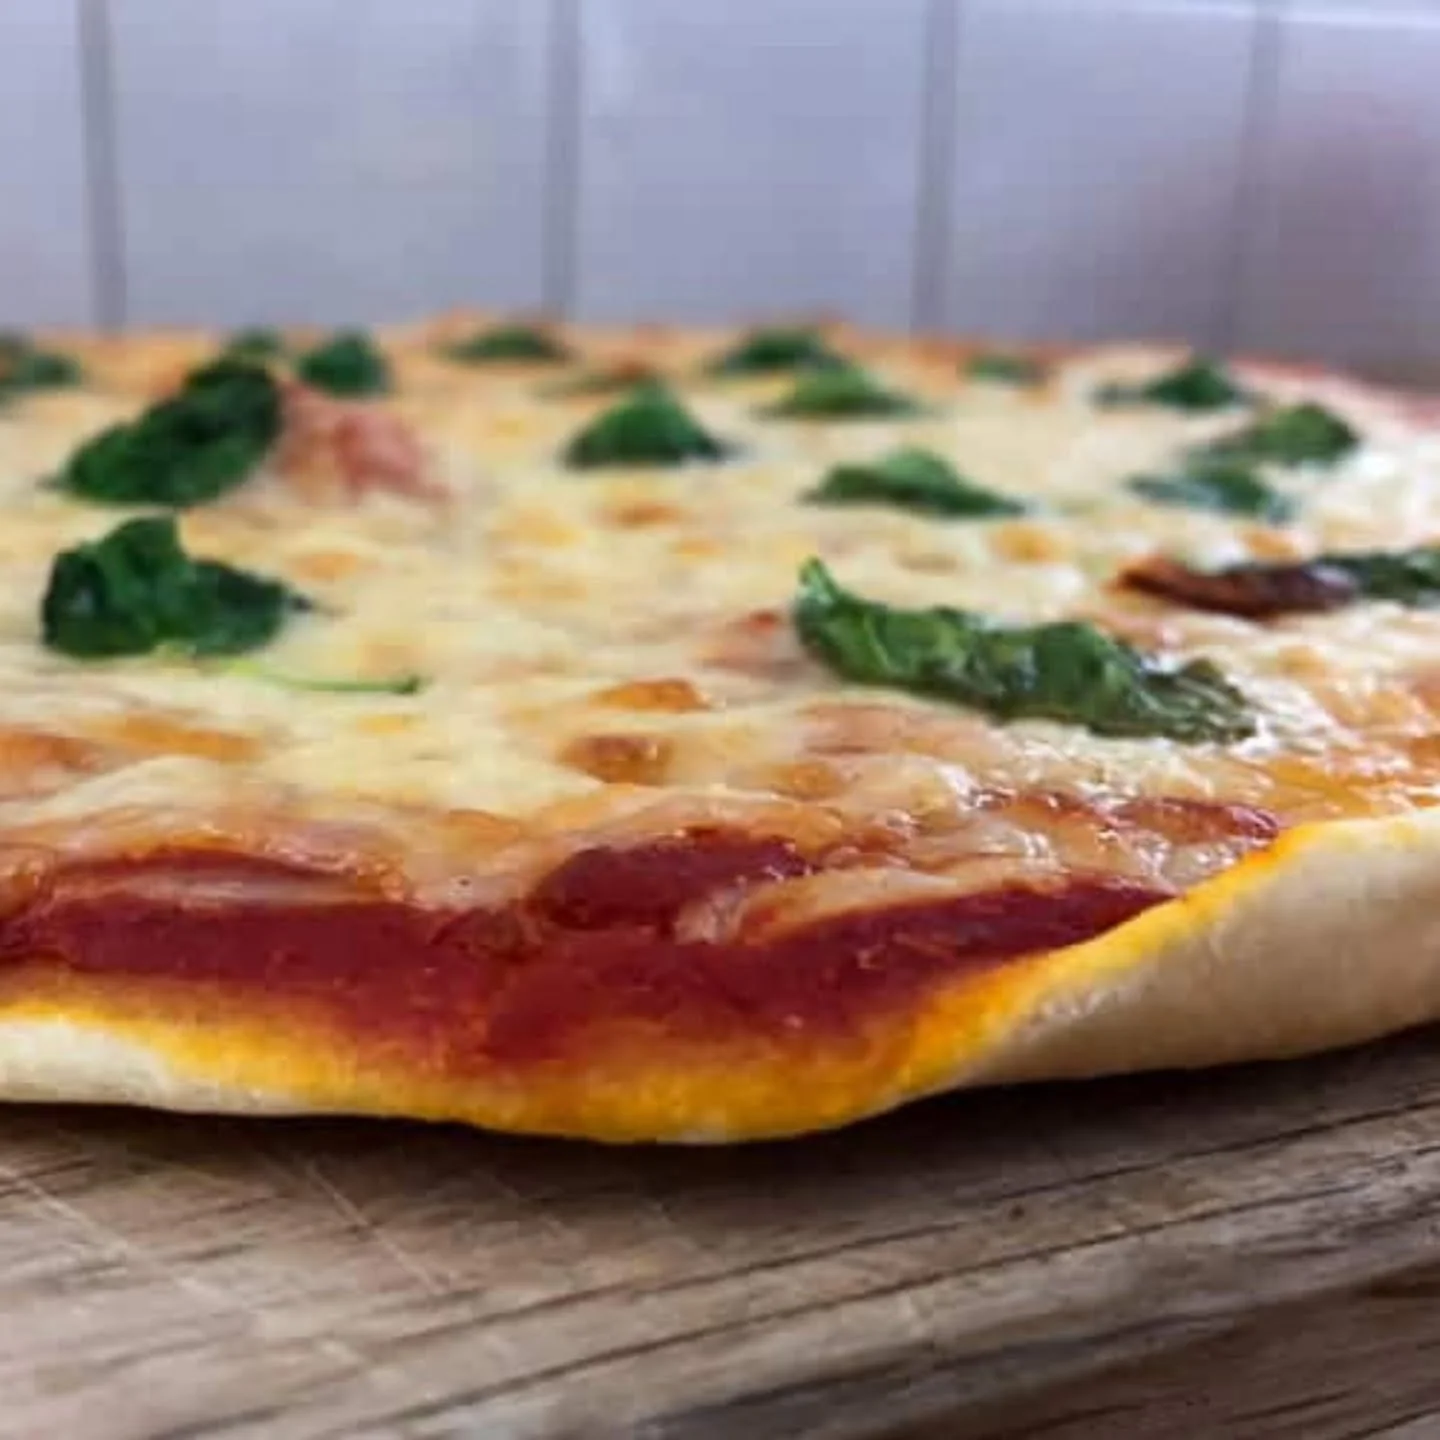 The best pizza dough